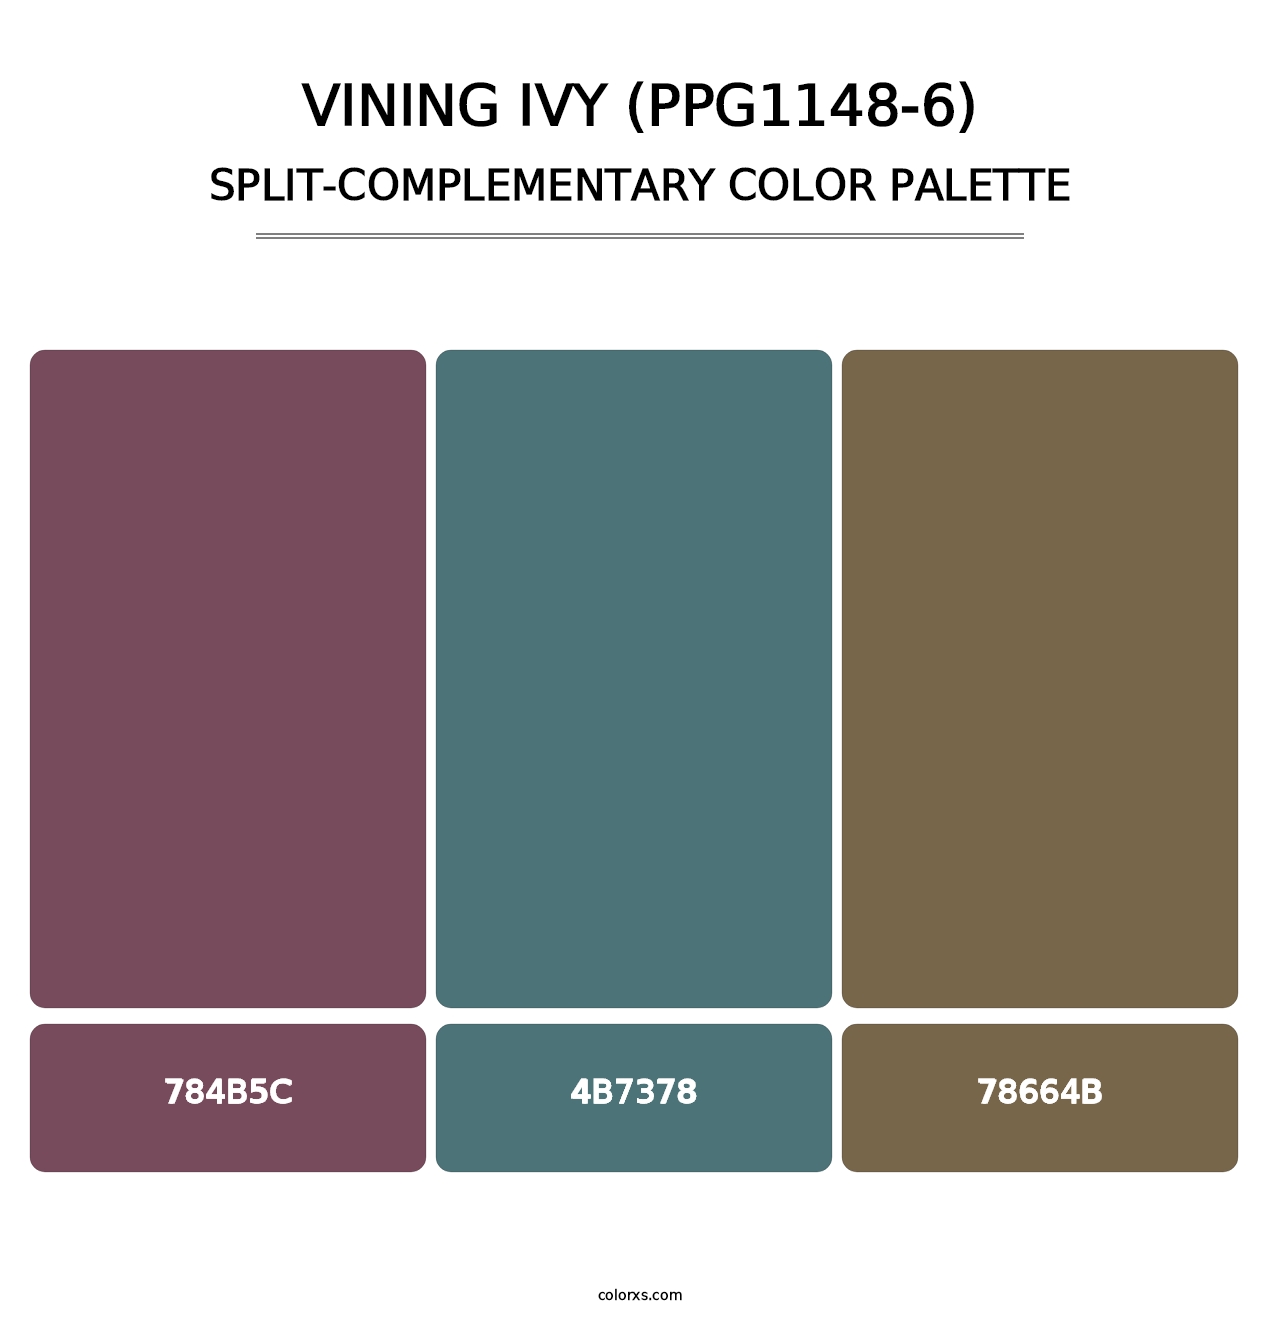 Vining Ivy (PPG1148-6) - Split-Complementary Color Palette